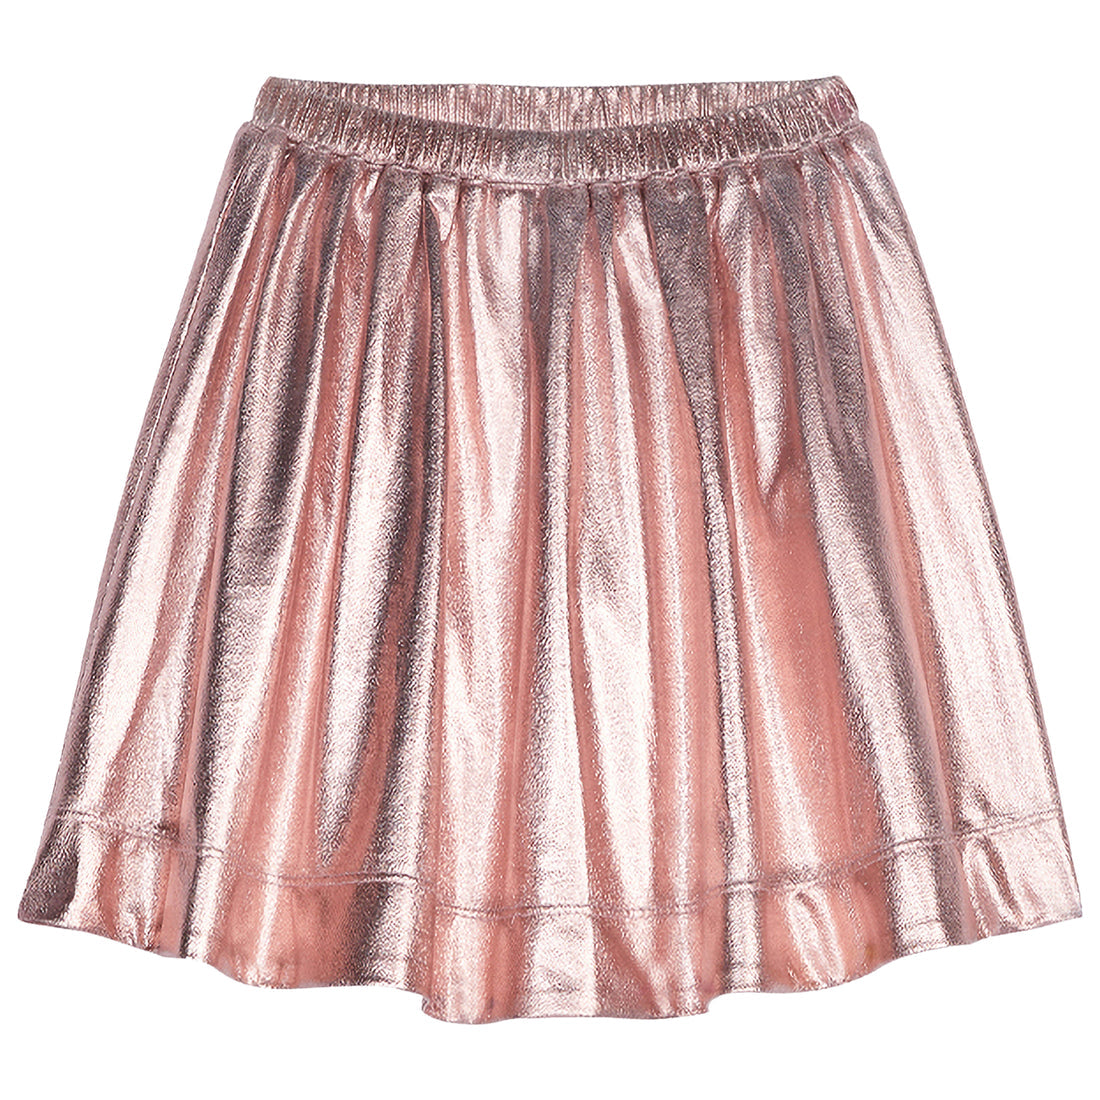 Circle Skirt Pink Lame